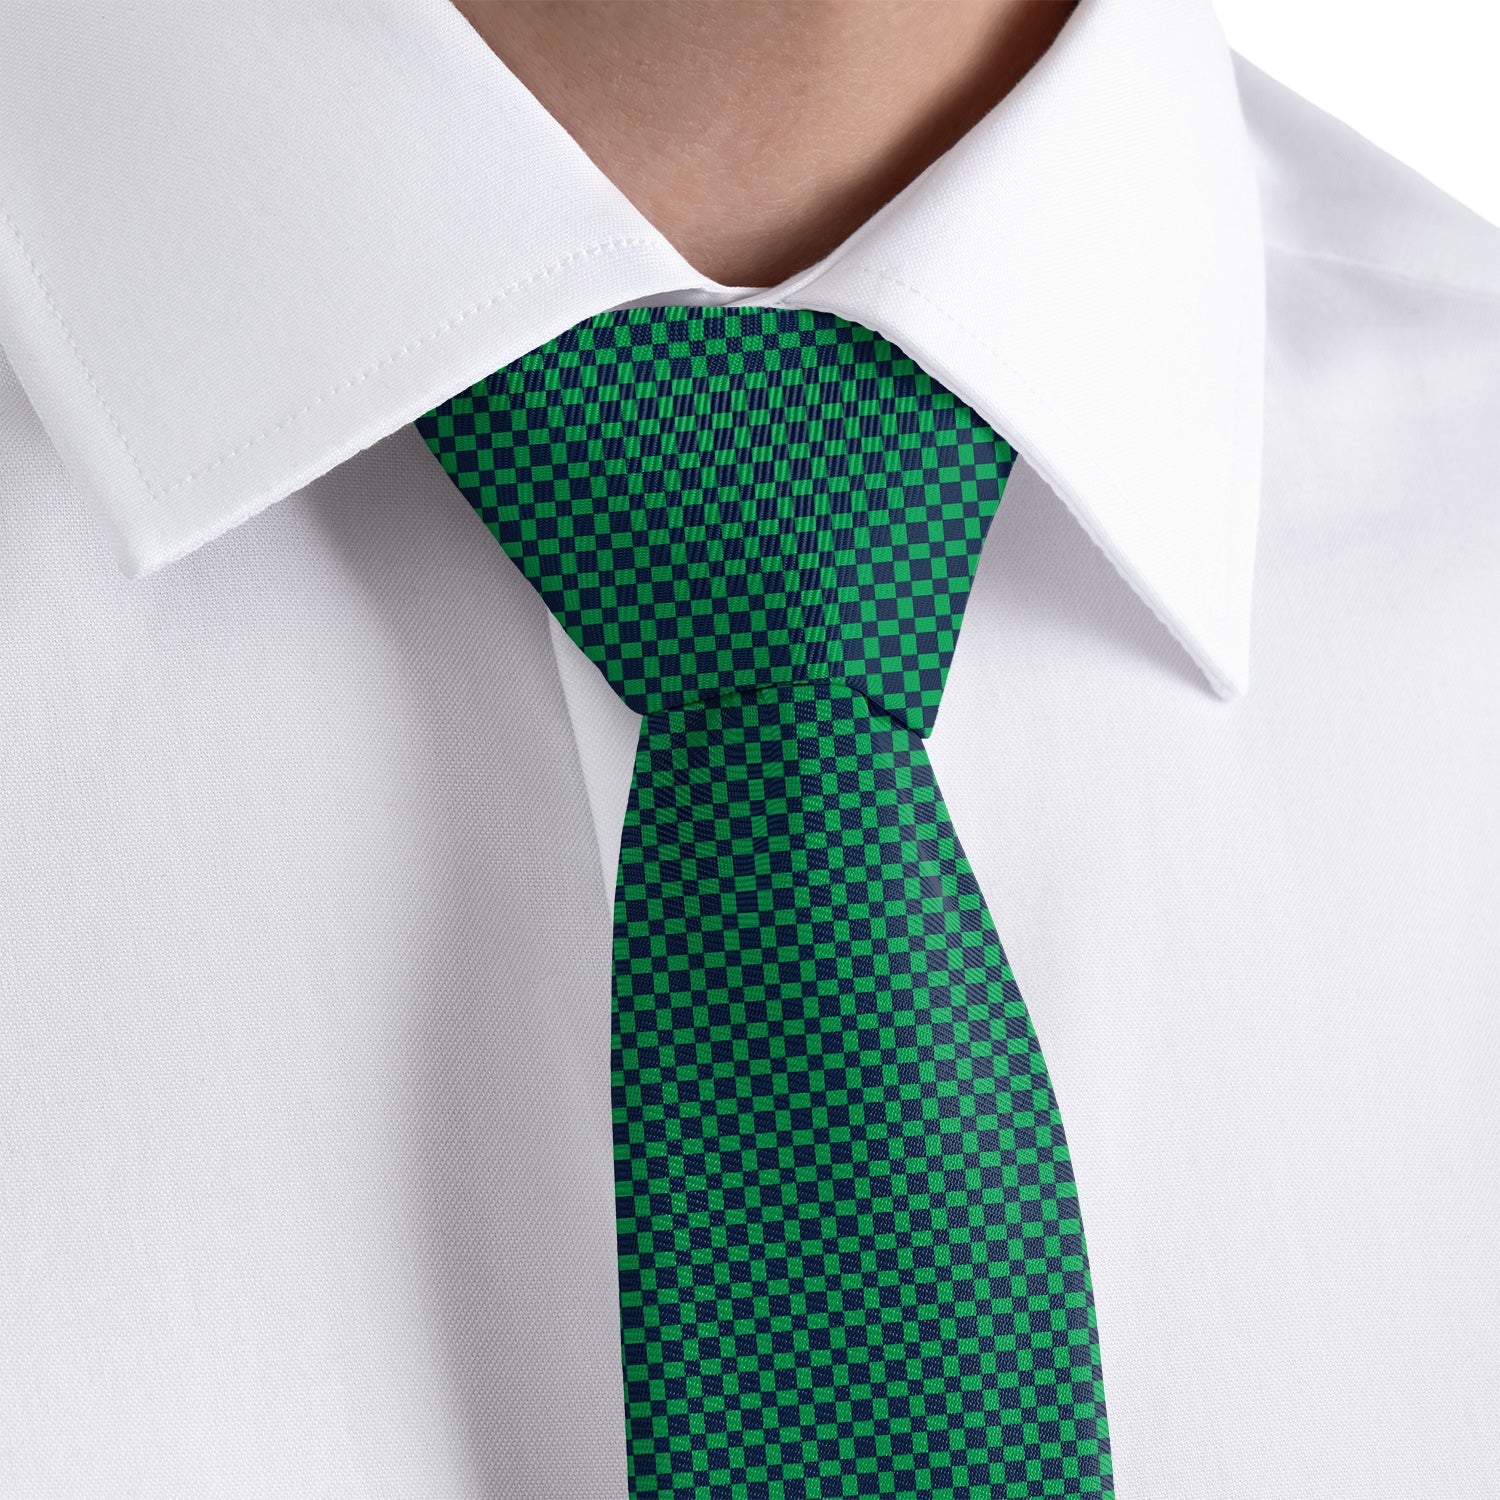 Norman Geo Necktie - Rolled - Knotty Tie Co.